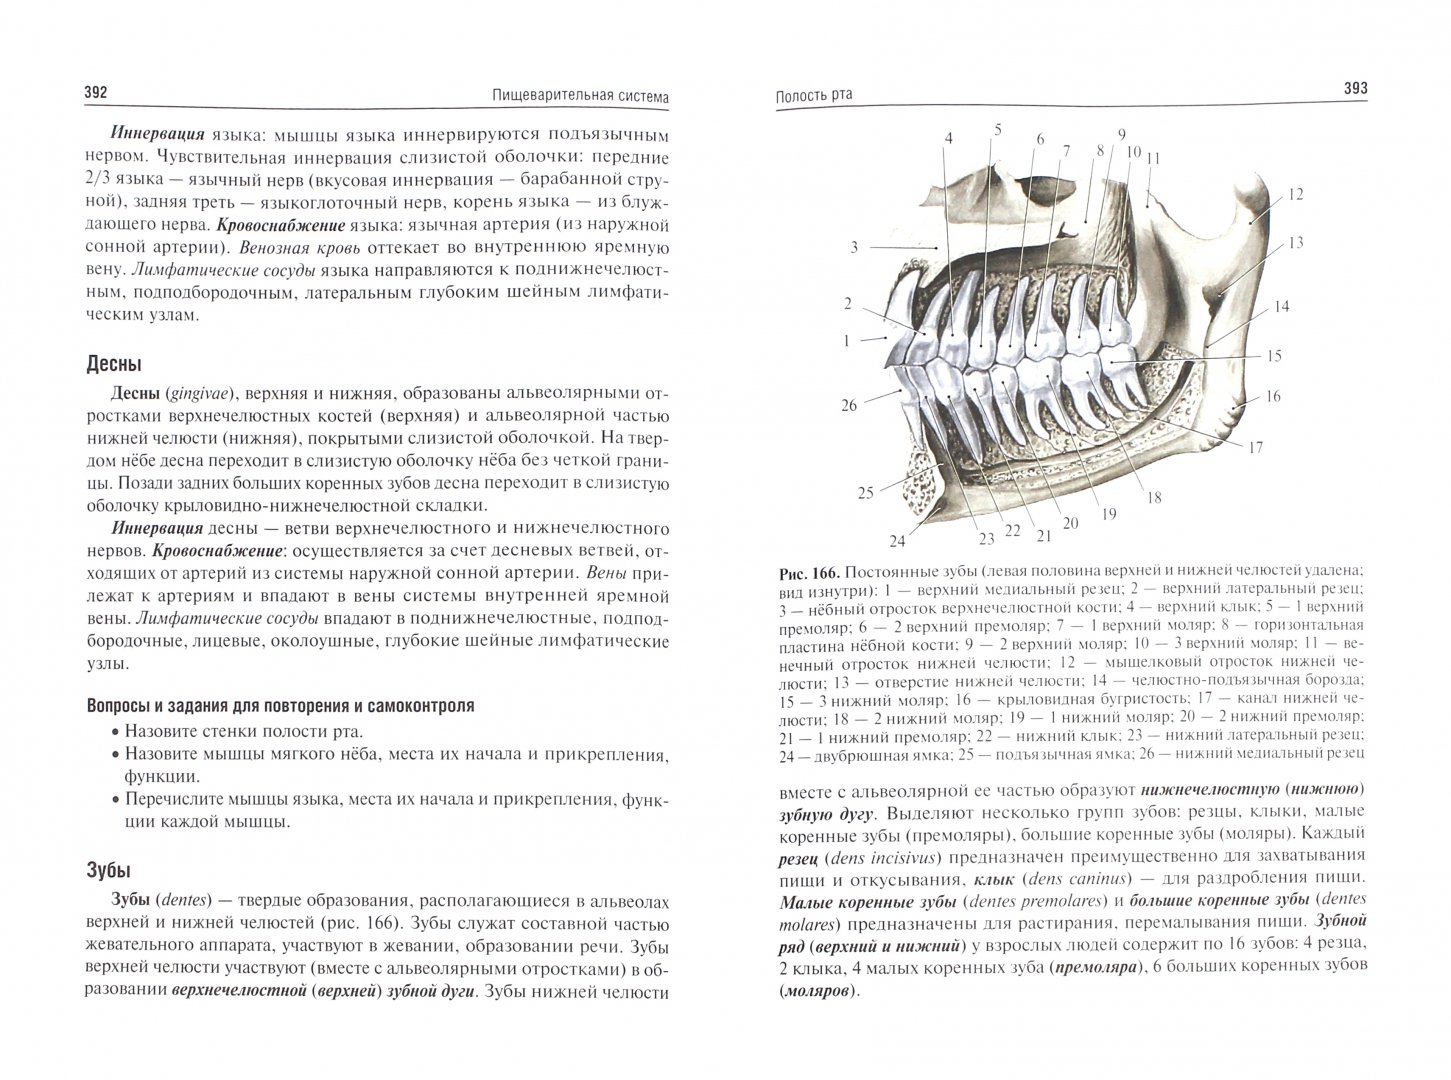 Иллюстрация 1 из 21 для Анатомия человека. Учебник для медико-профилактических факультетов - Никитюк, Сапин, Клочкова | Лабиринт - книги. Источник: Лабиринт